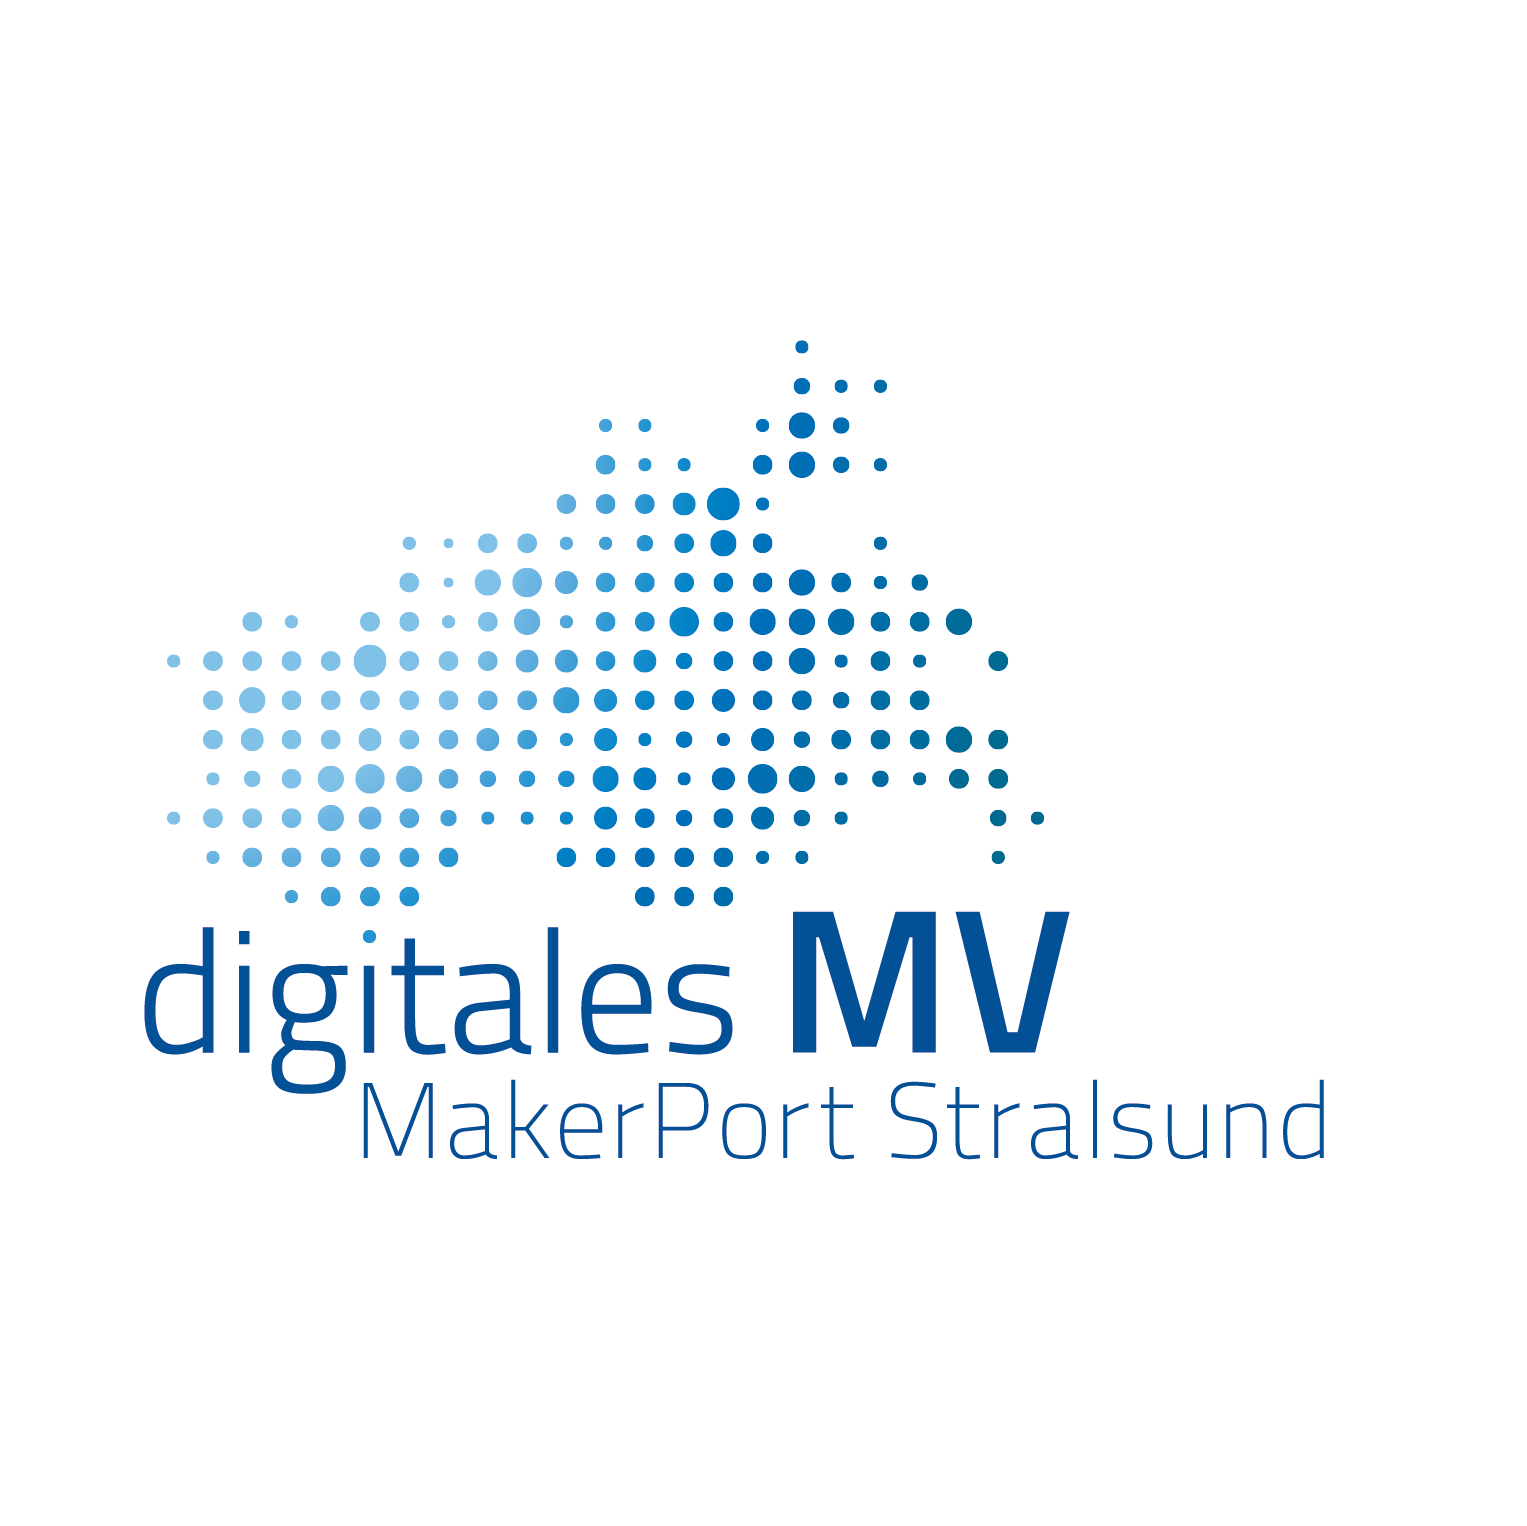 MakerPort Stralsund